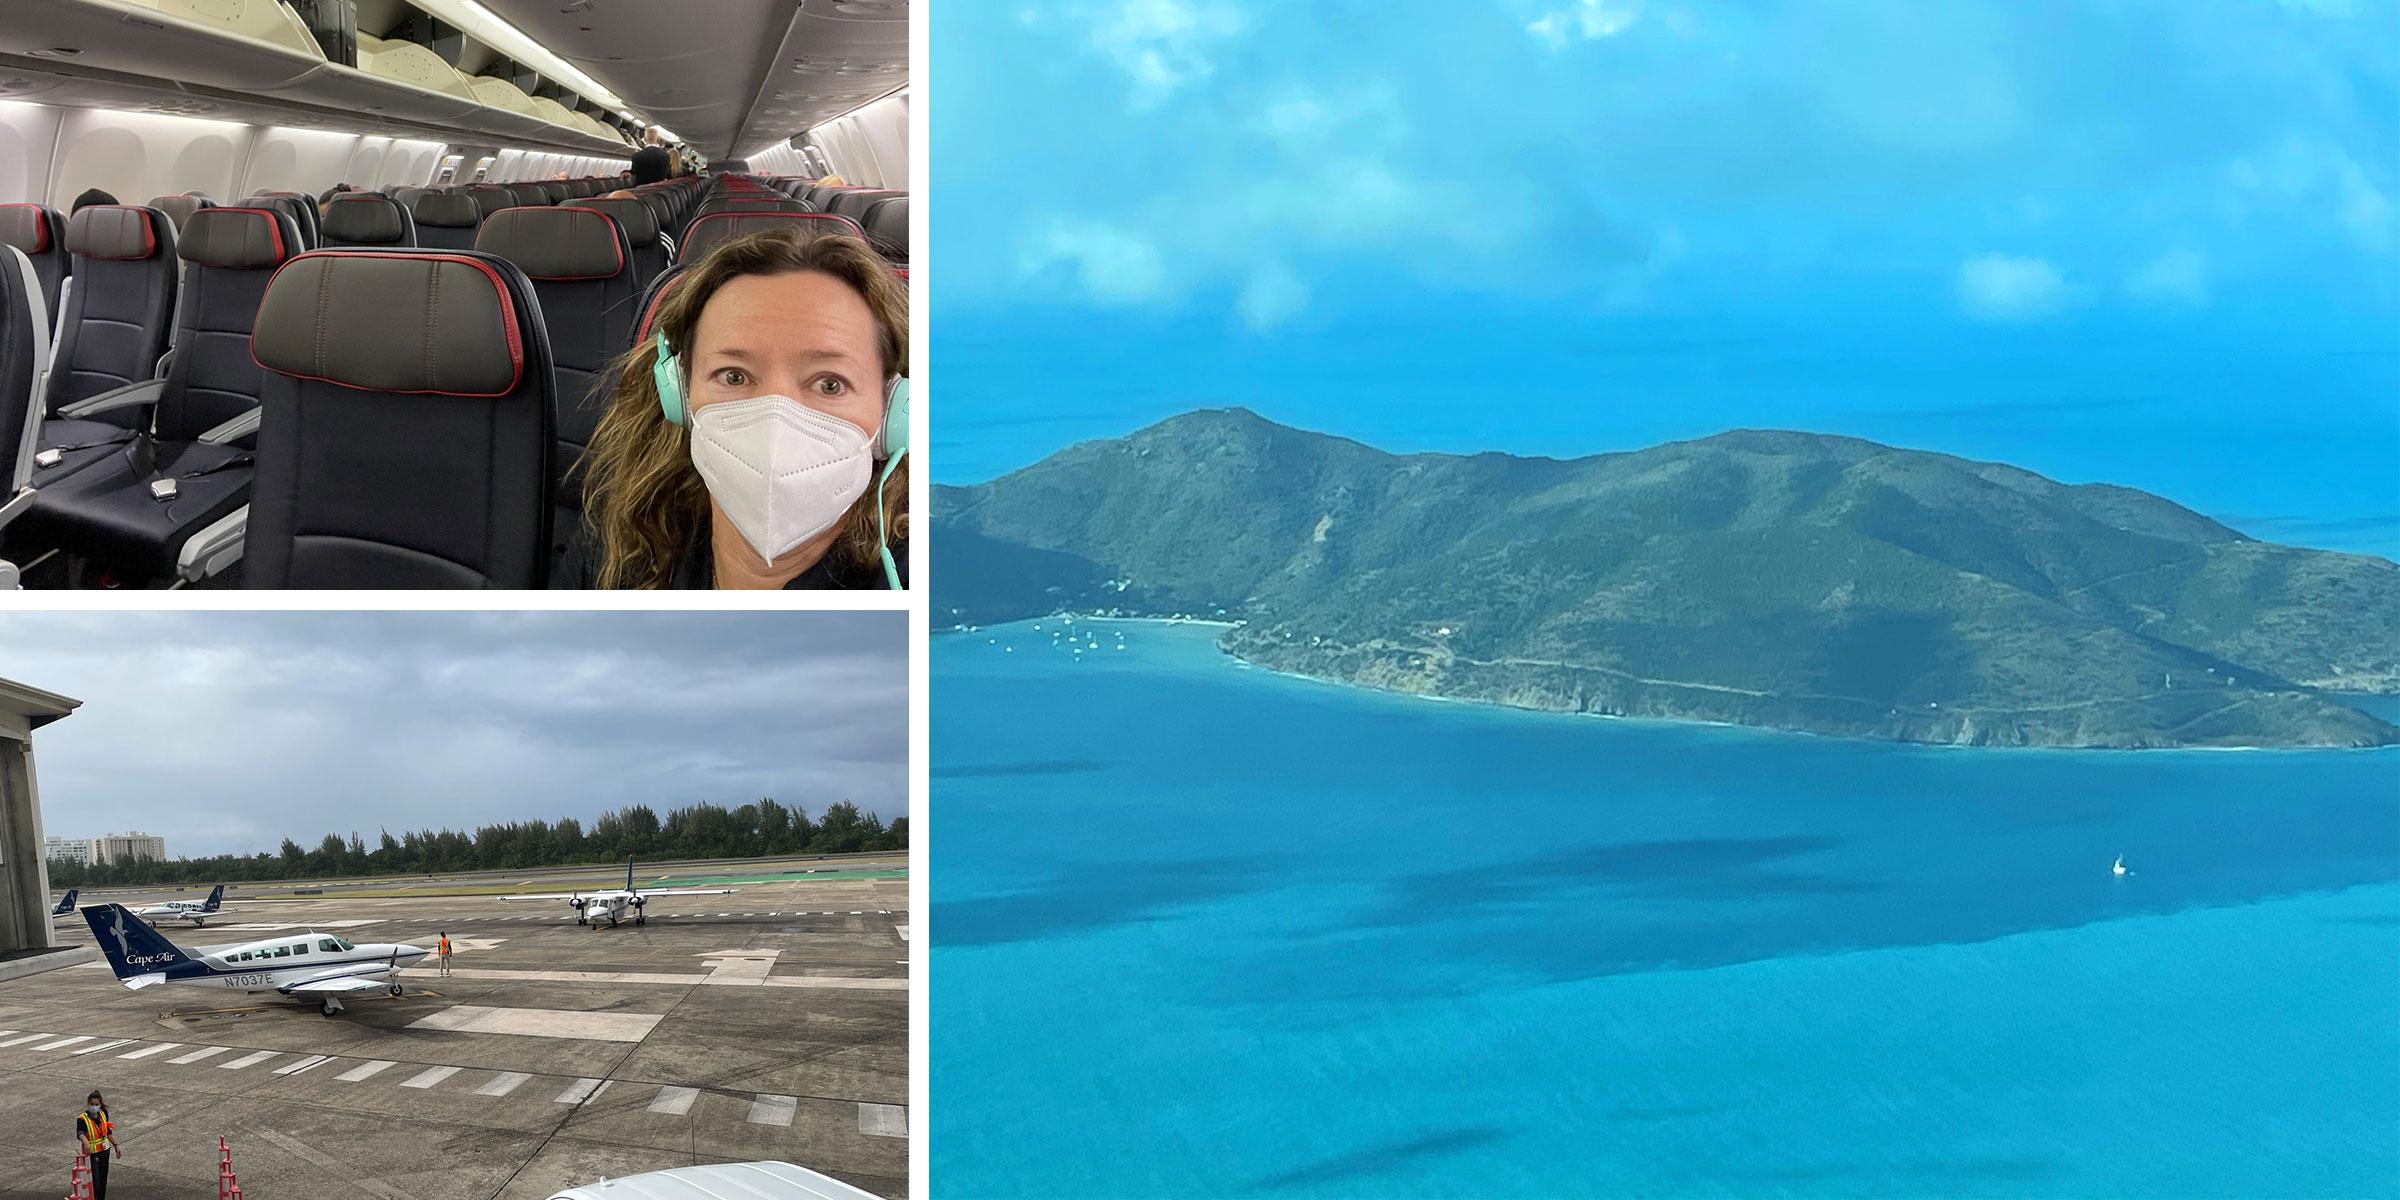 Josie with mask on flight, Cape Air plane, birdeye view Tortola BVI